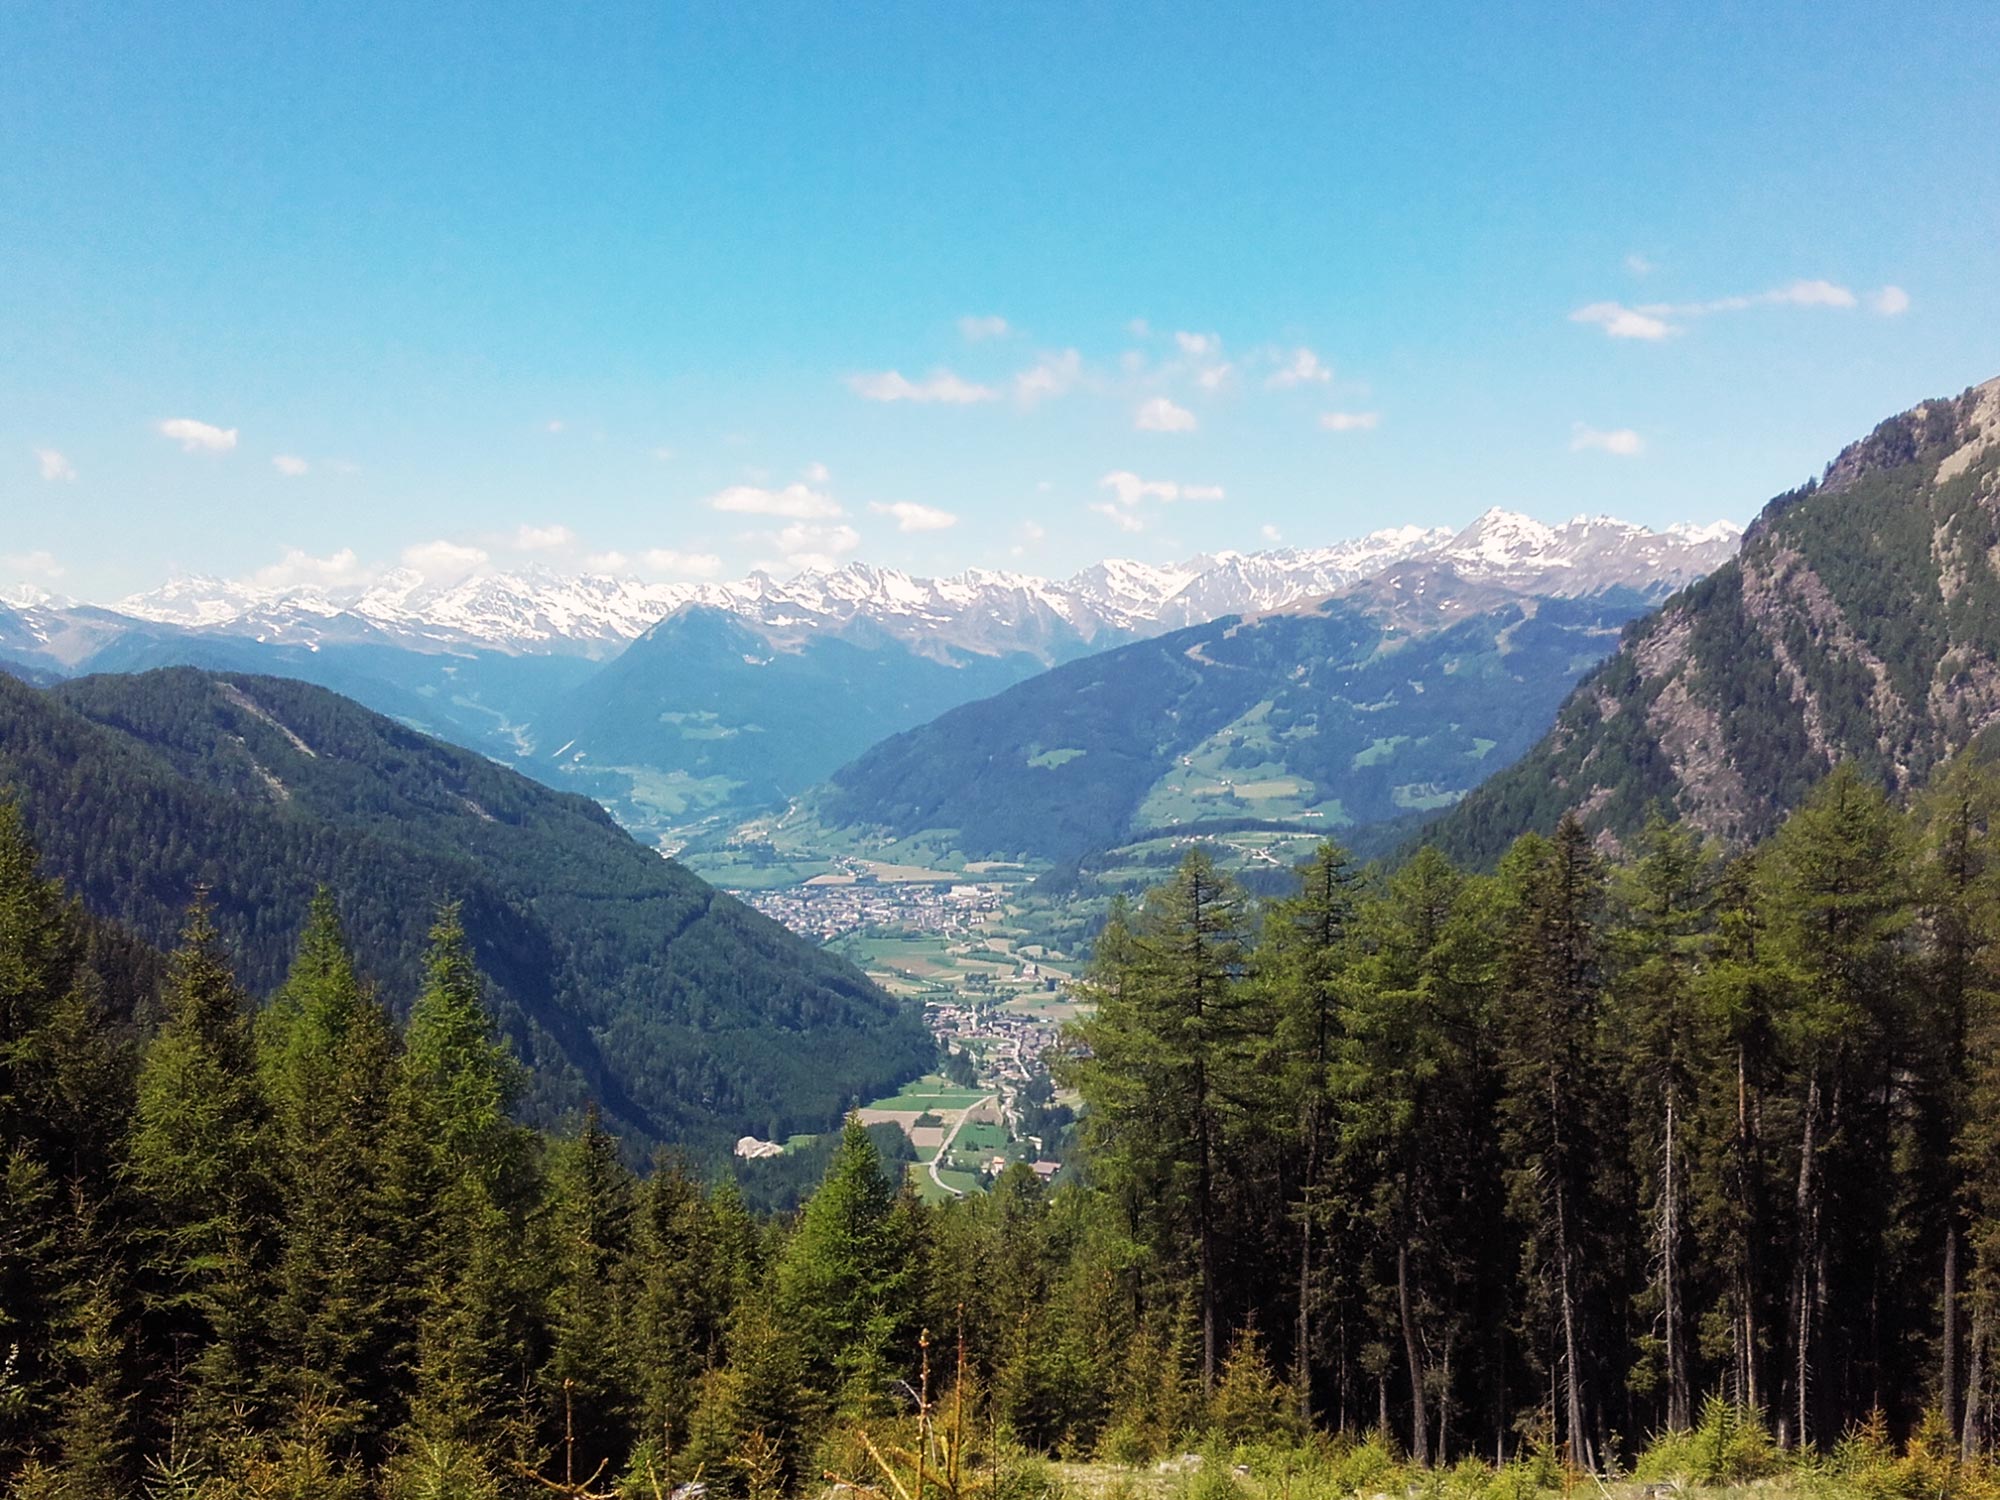 Vacanza estiva ed escursionistica in Val di Vizze presso Vipiteno